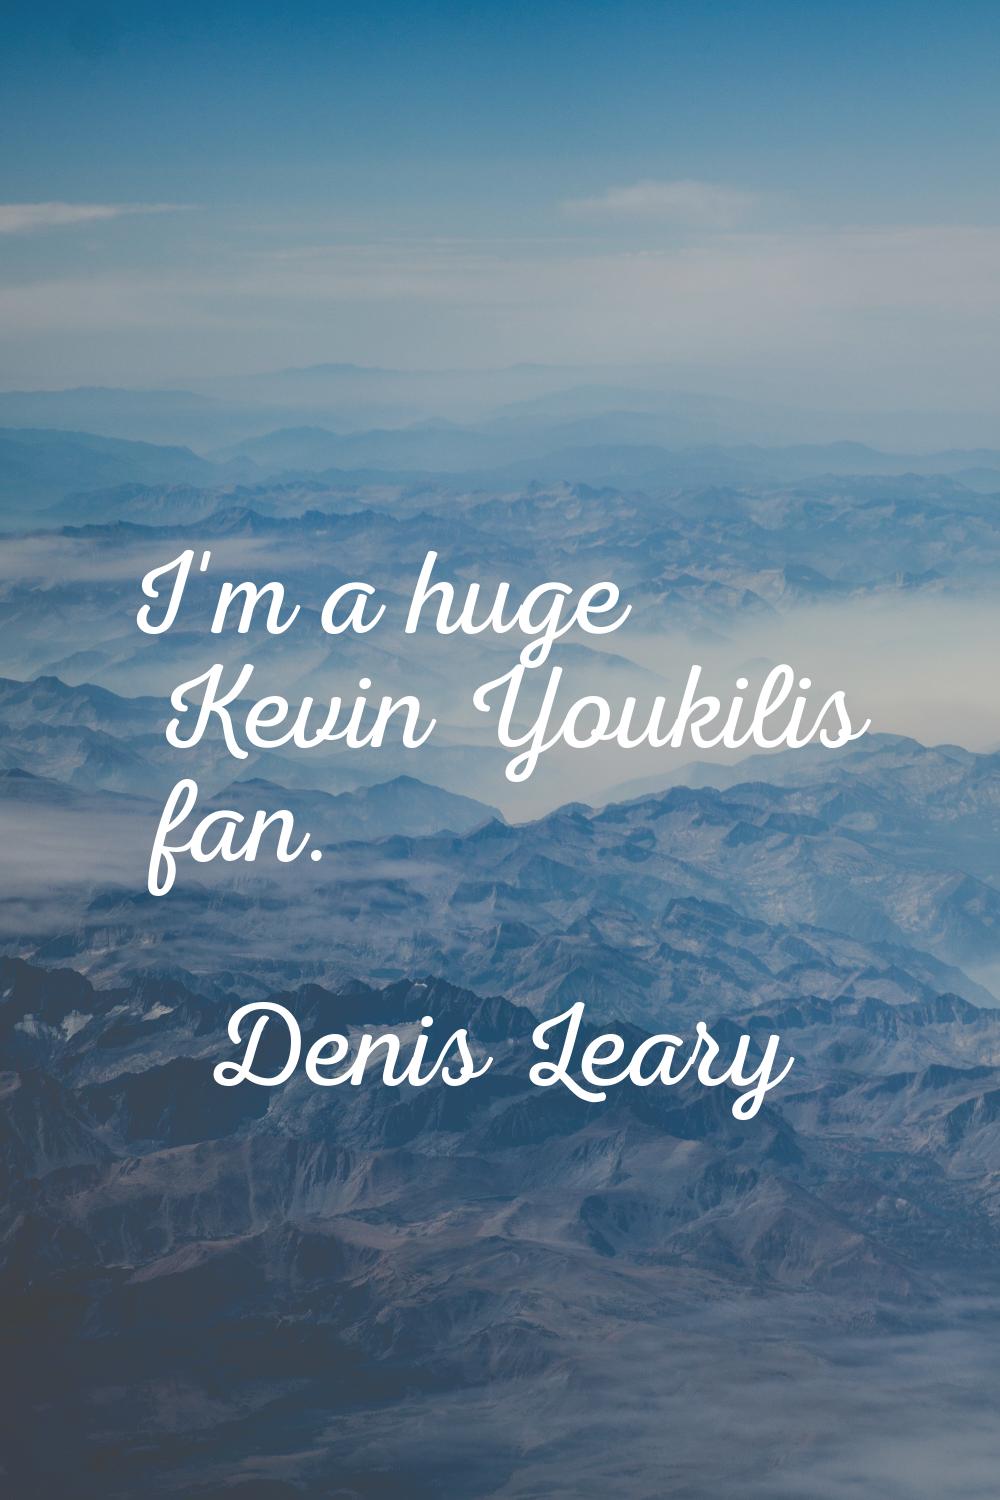 I'm a huge Kevin Youkilis fan.